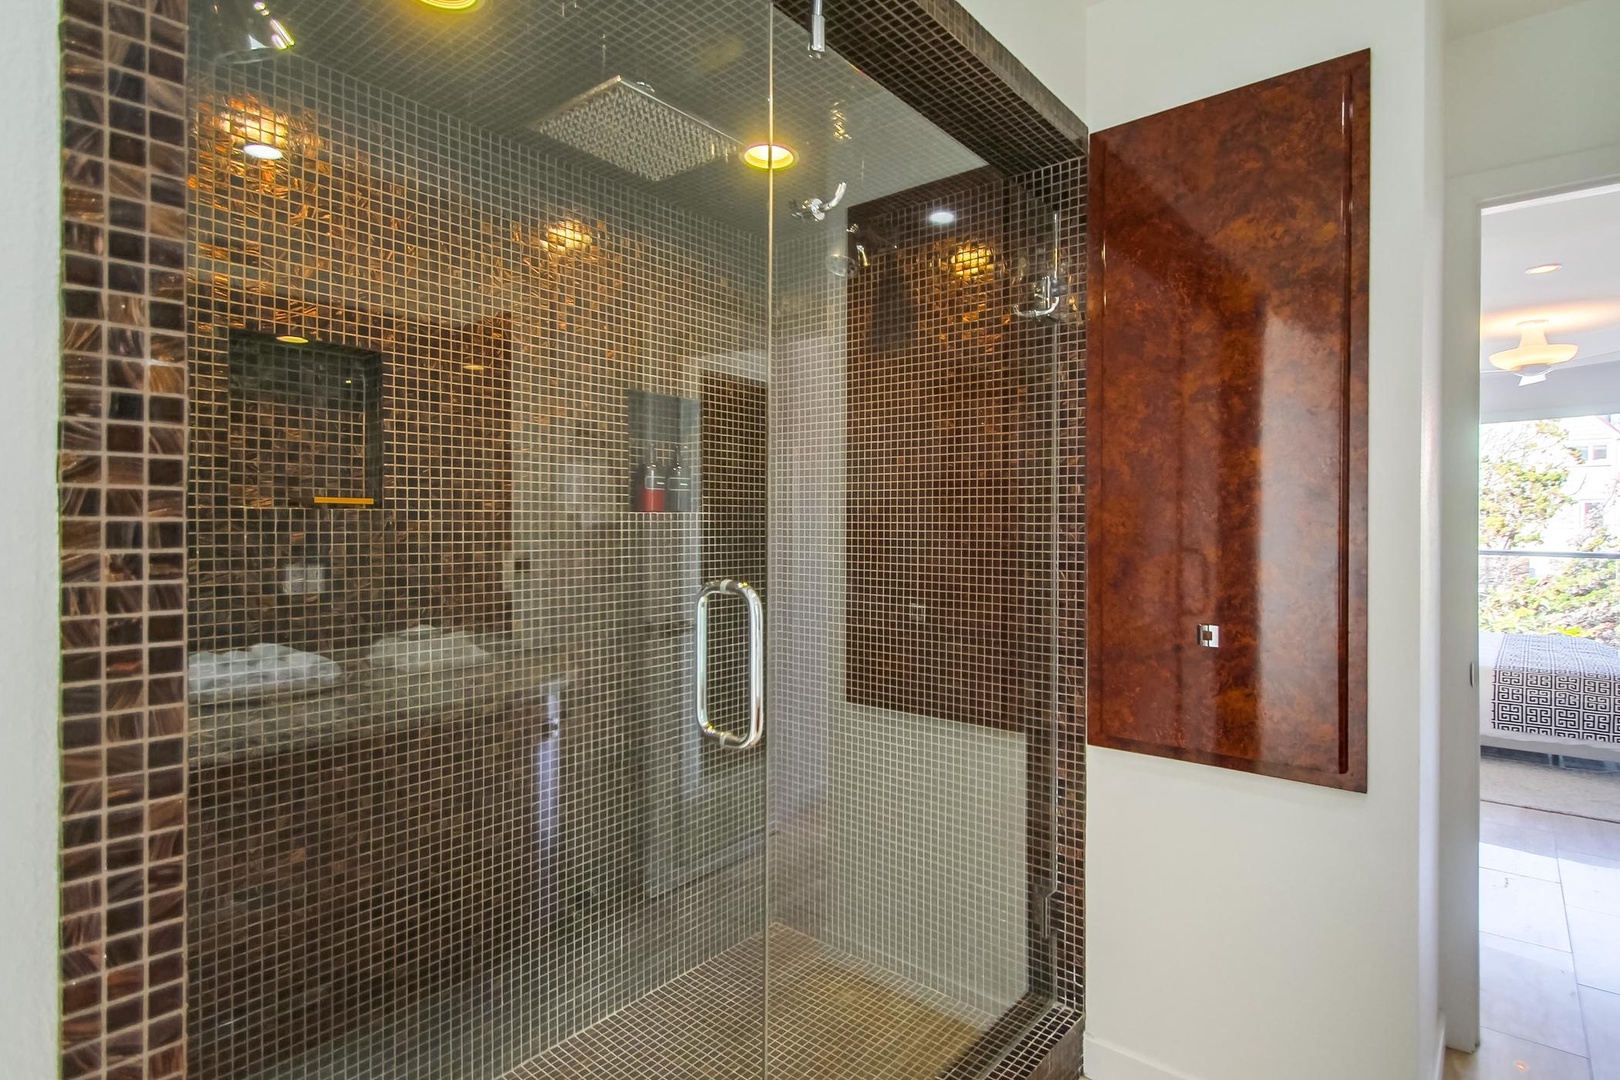 Oversize glass-tiled, walk-in shower